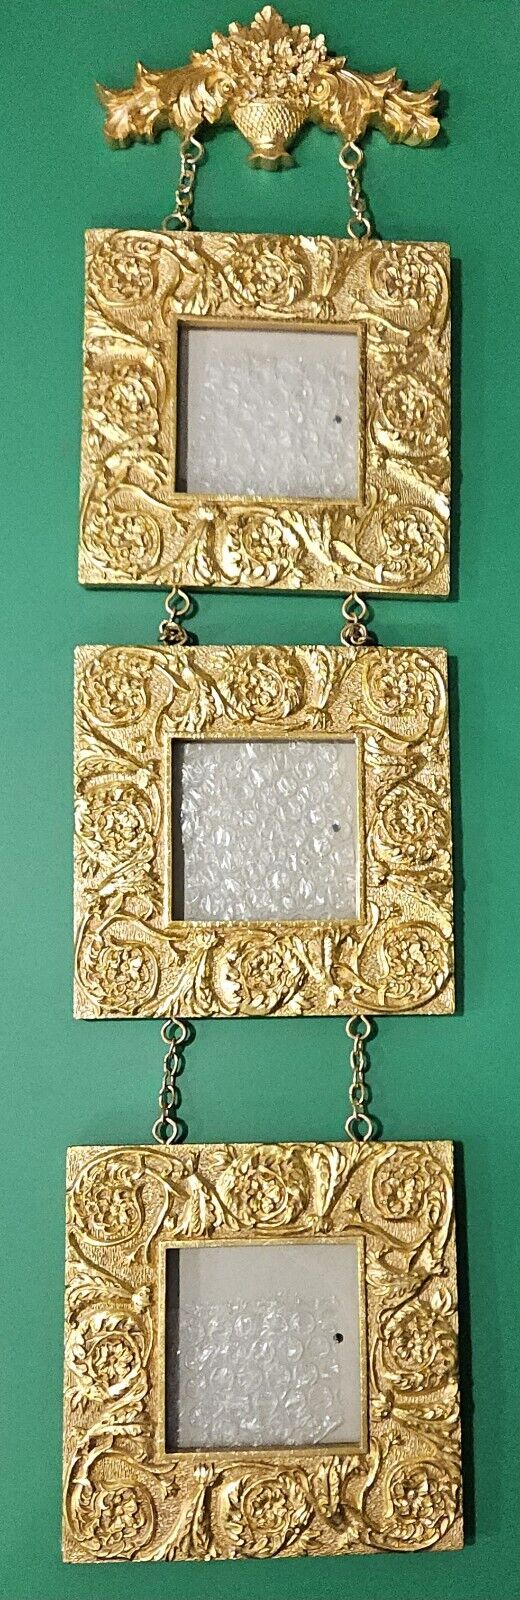 Gold Frames-Bombay- 3 Hanging Gold Ornate Frames/Flower Basket 3.5